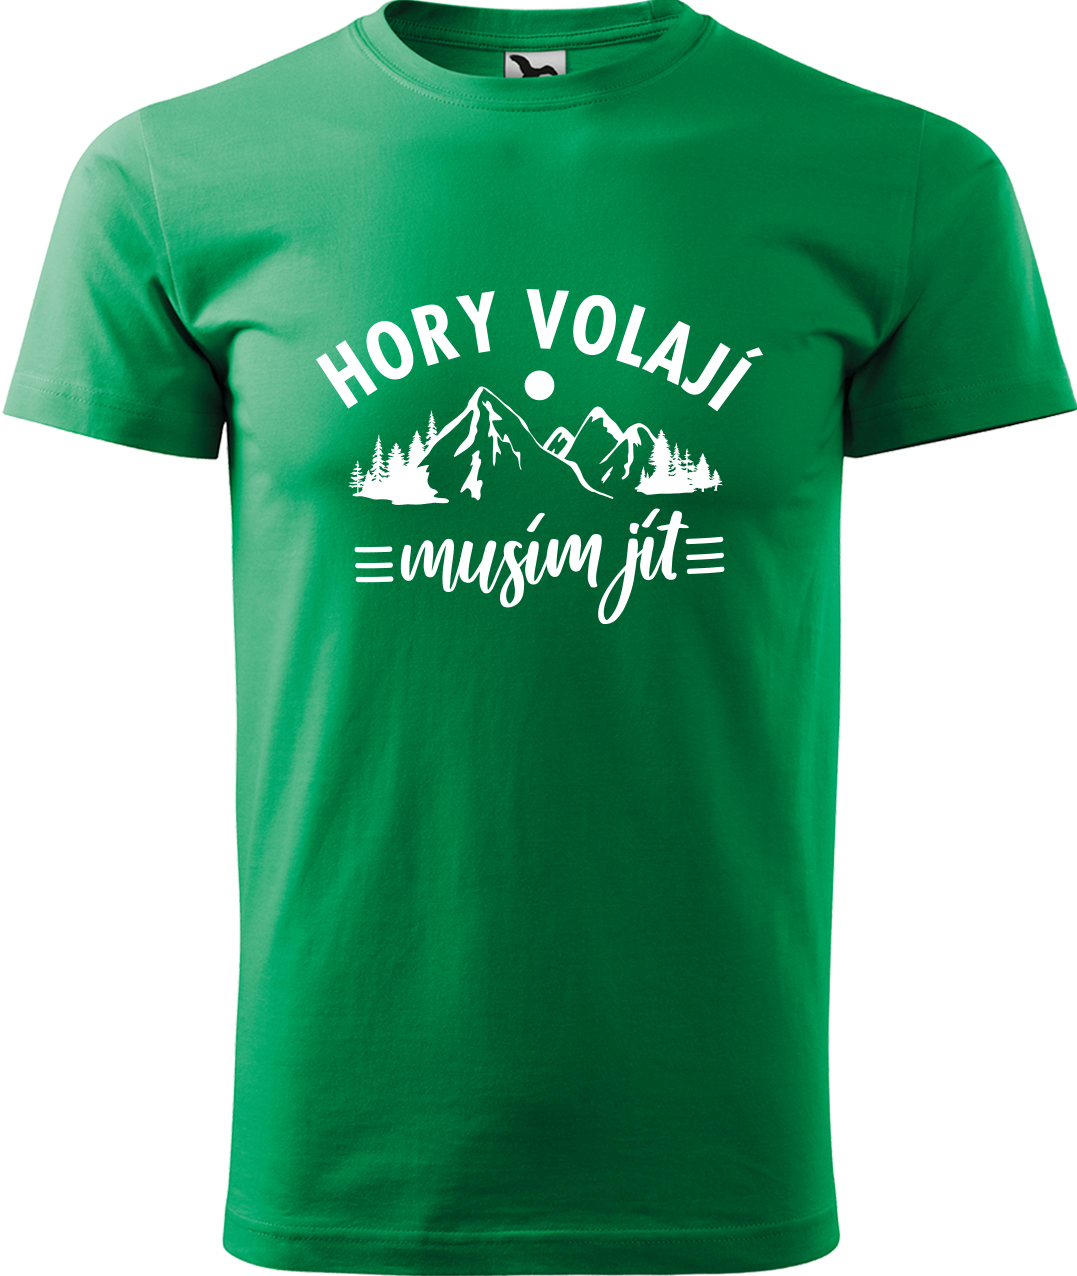 Pánské tričko na hory - Hory volají, musím jít Velikost: S, Barva: Středně zelená (16), Střih: pánský